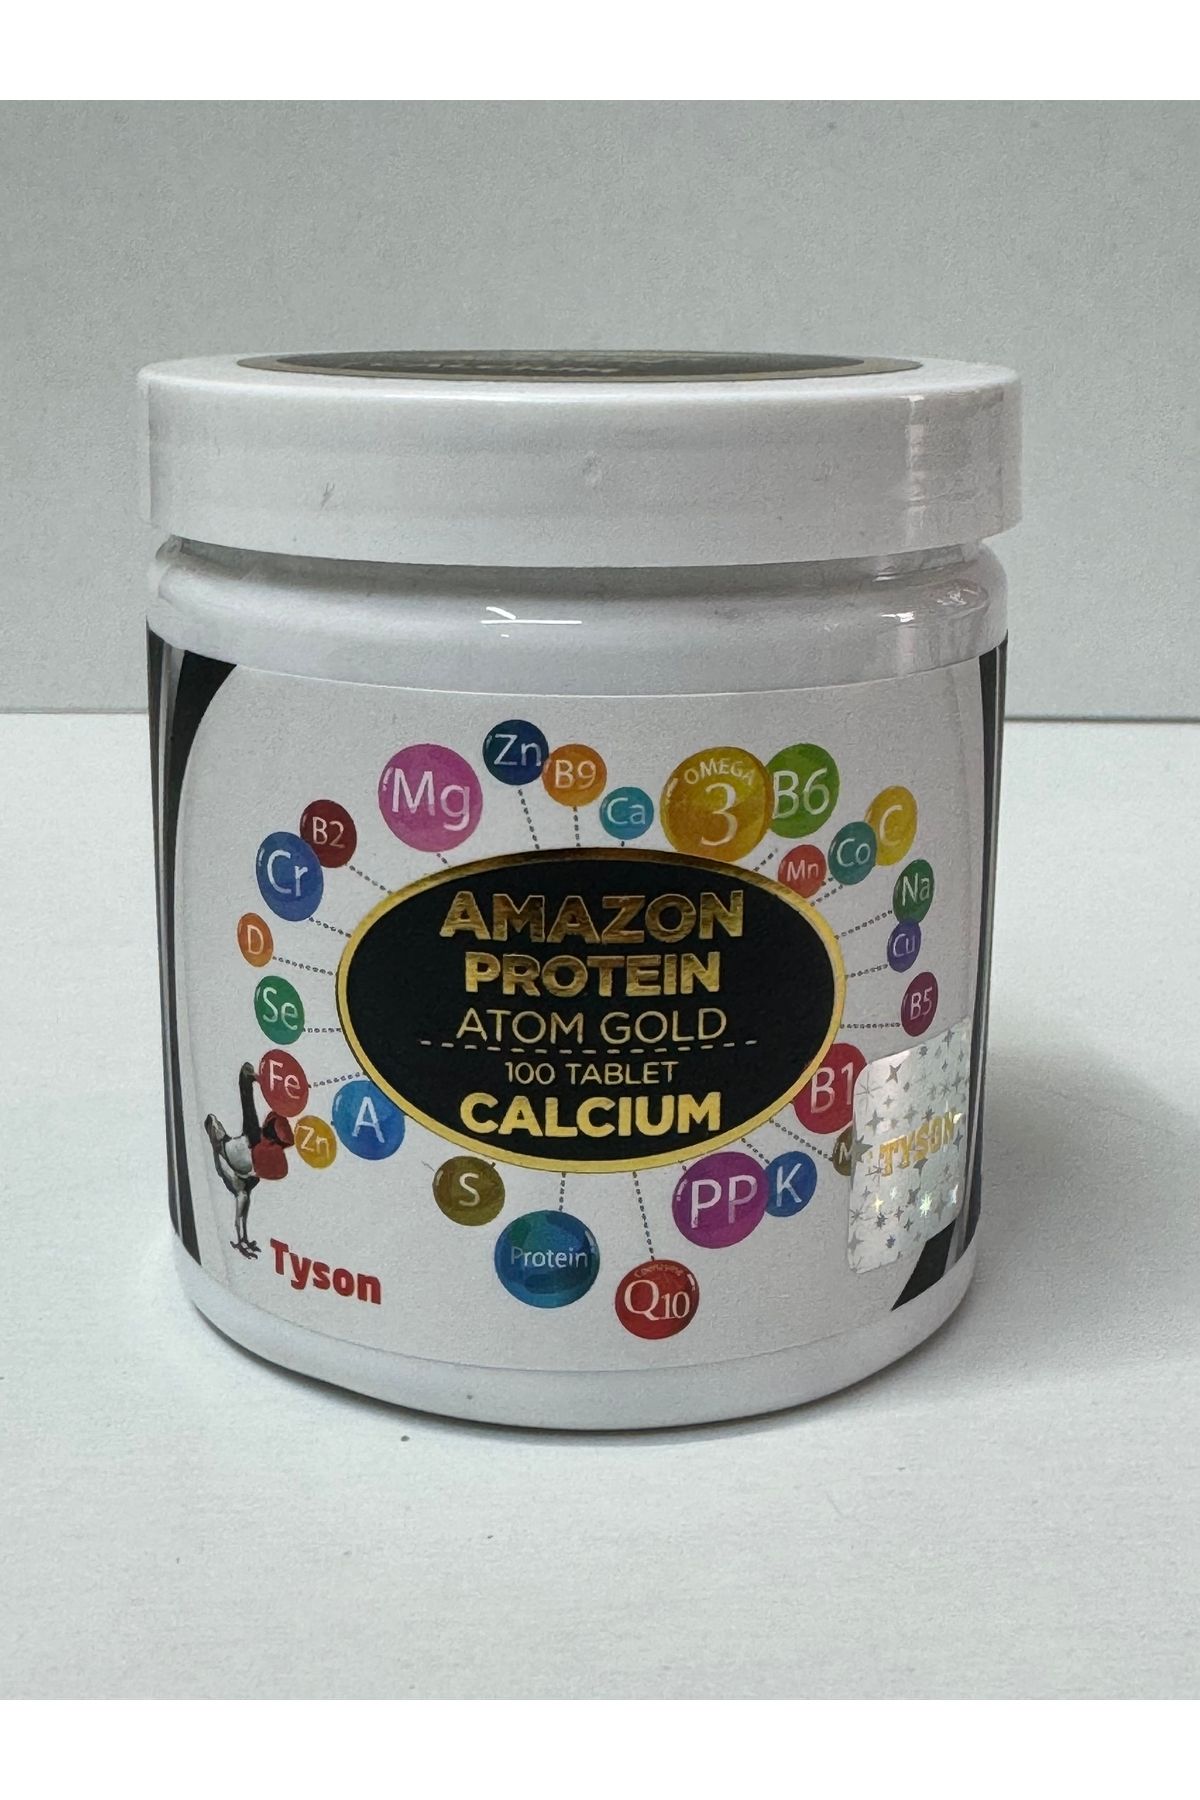 TYSON Amazon Protein Calcıum 100 Tablet